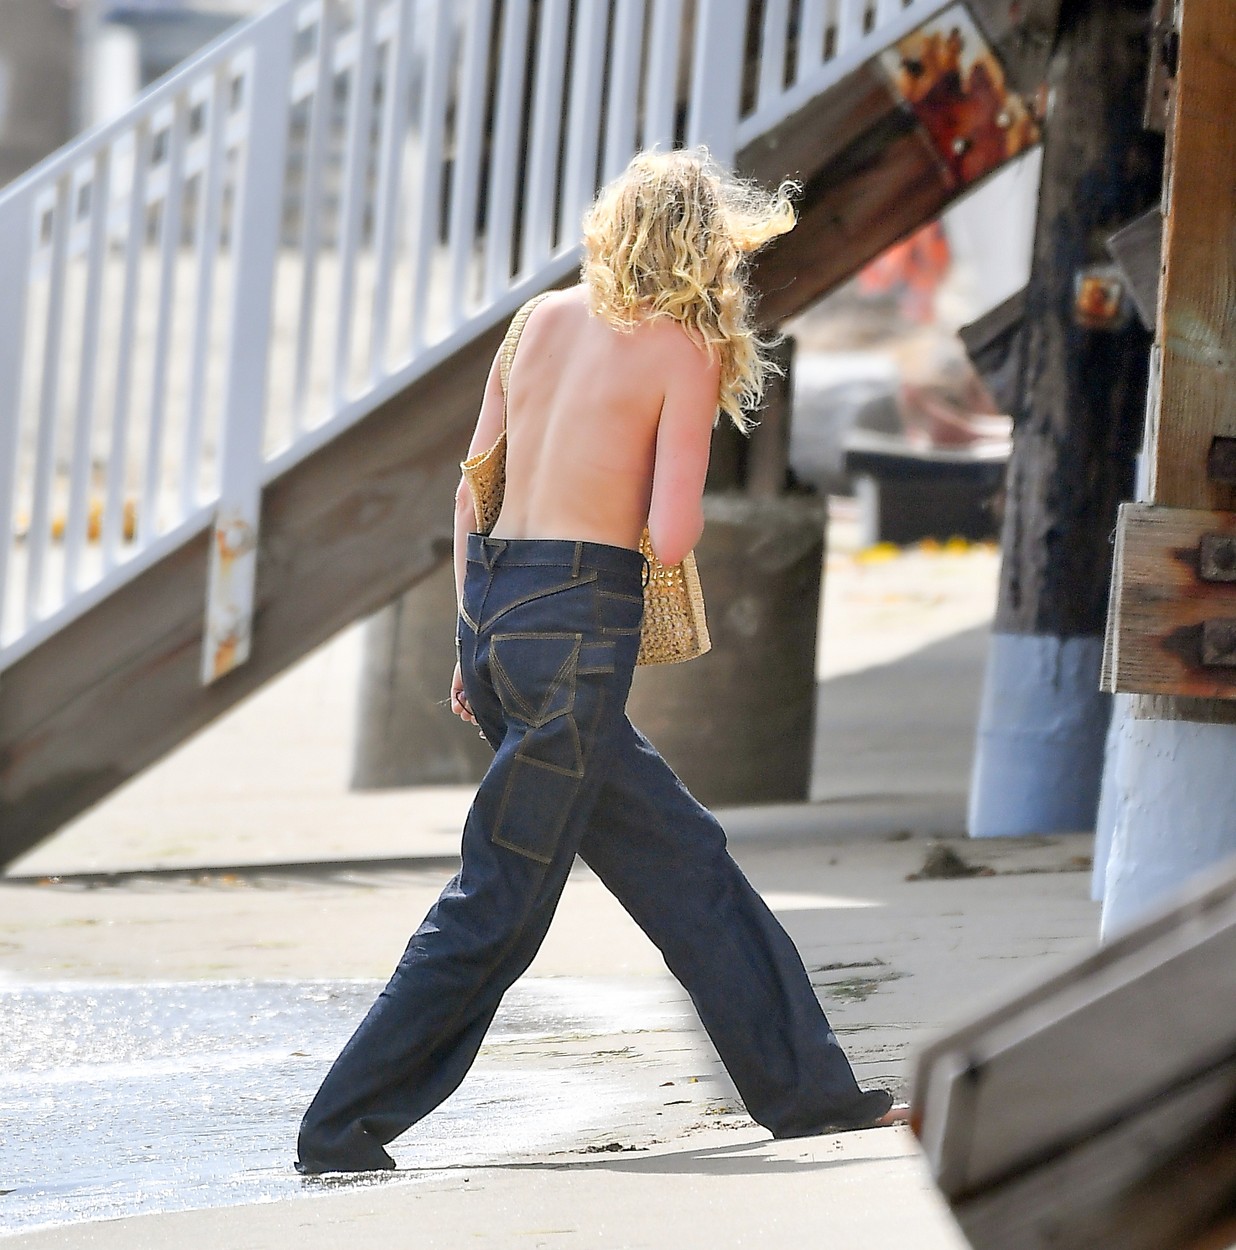 Elsa Hosk, fotografiată în timp ce pleacă de la plajă, doar în pantaloni, fără nimic în zona bustului